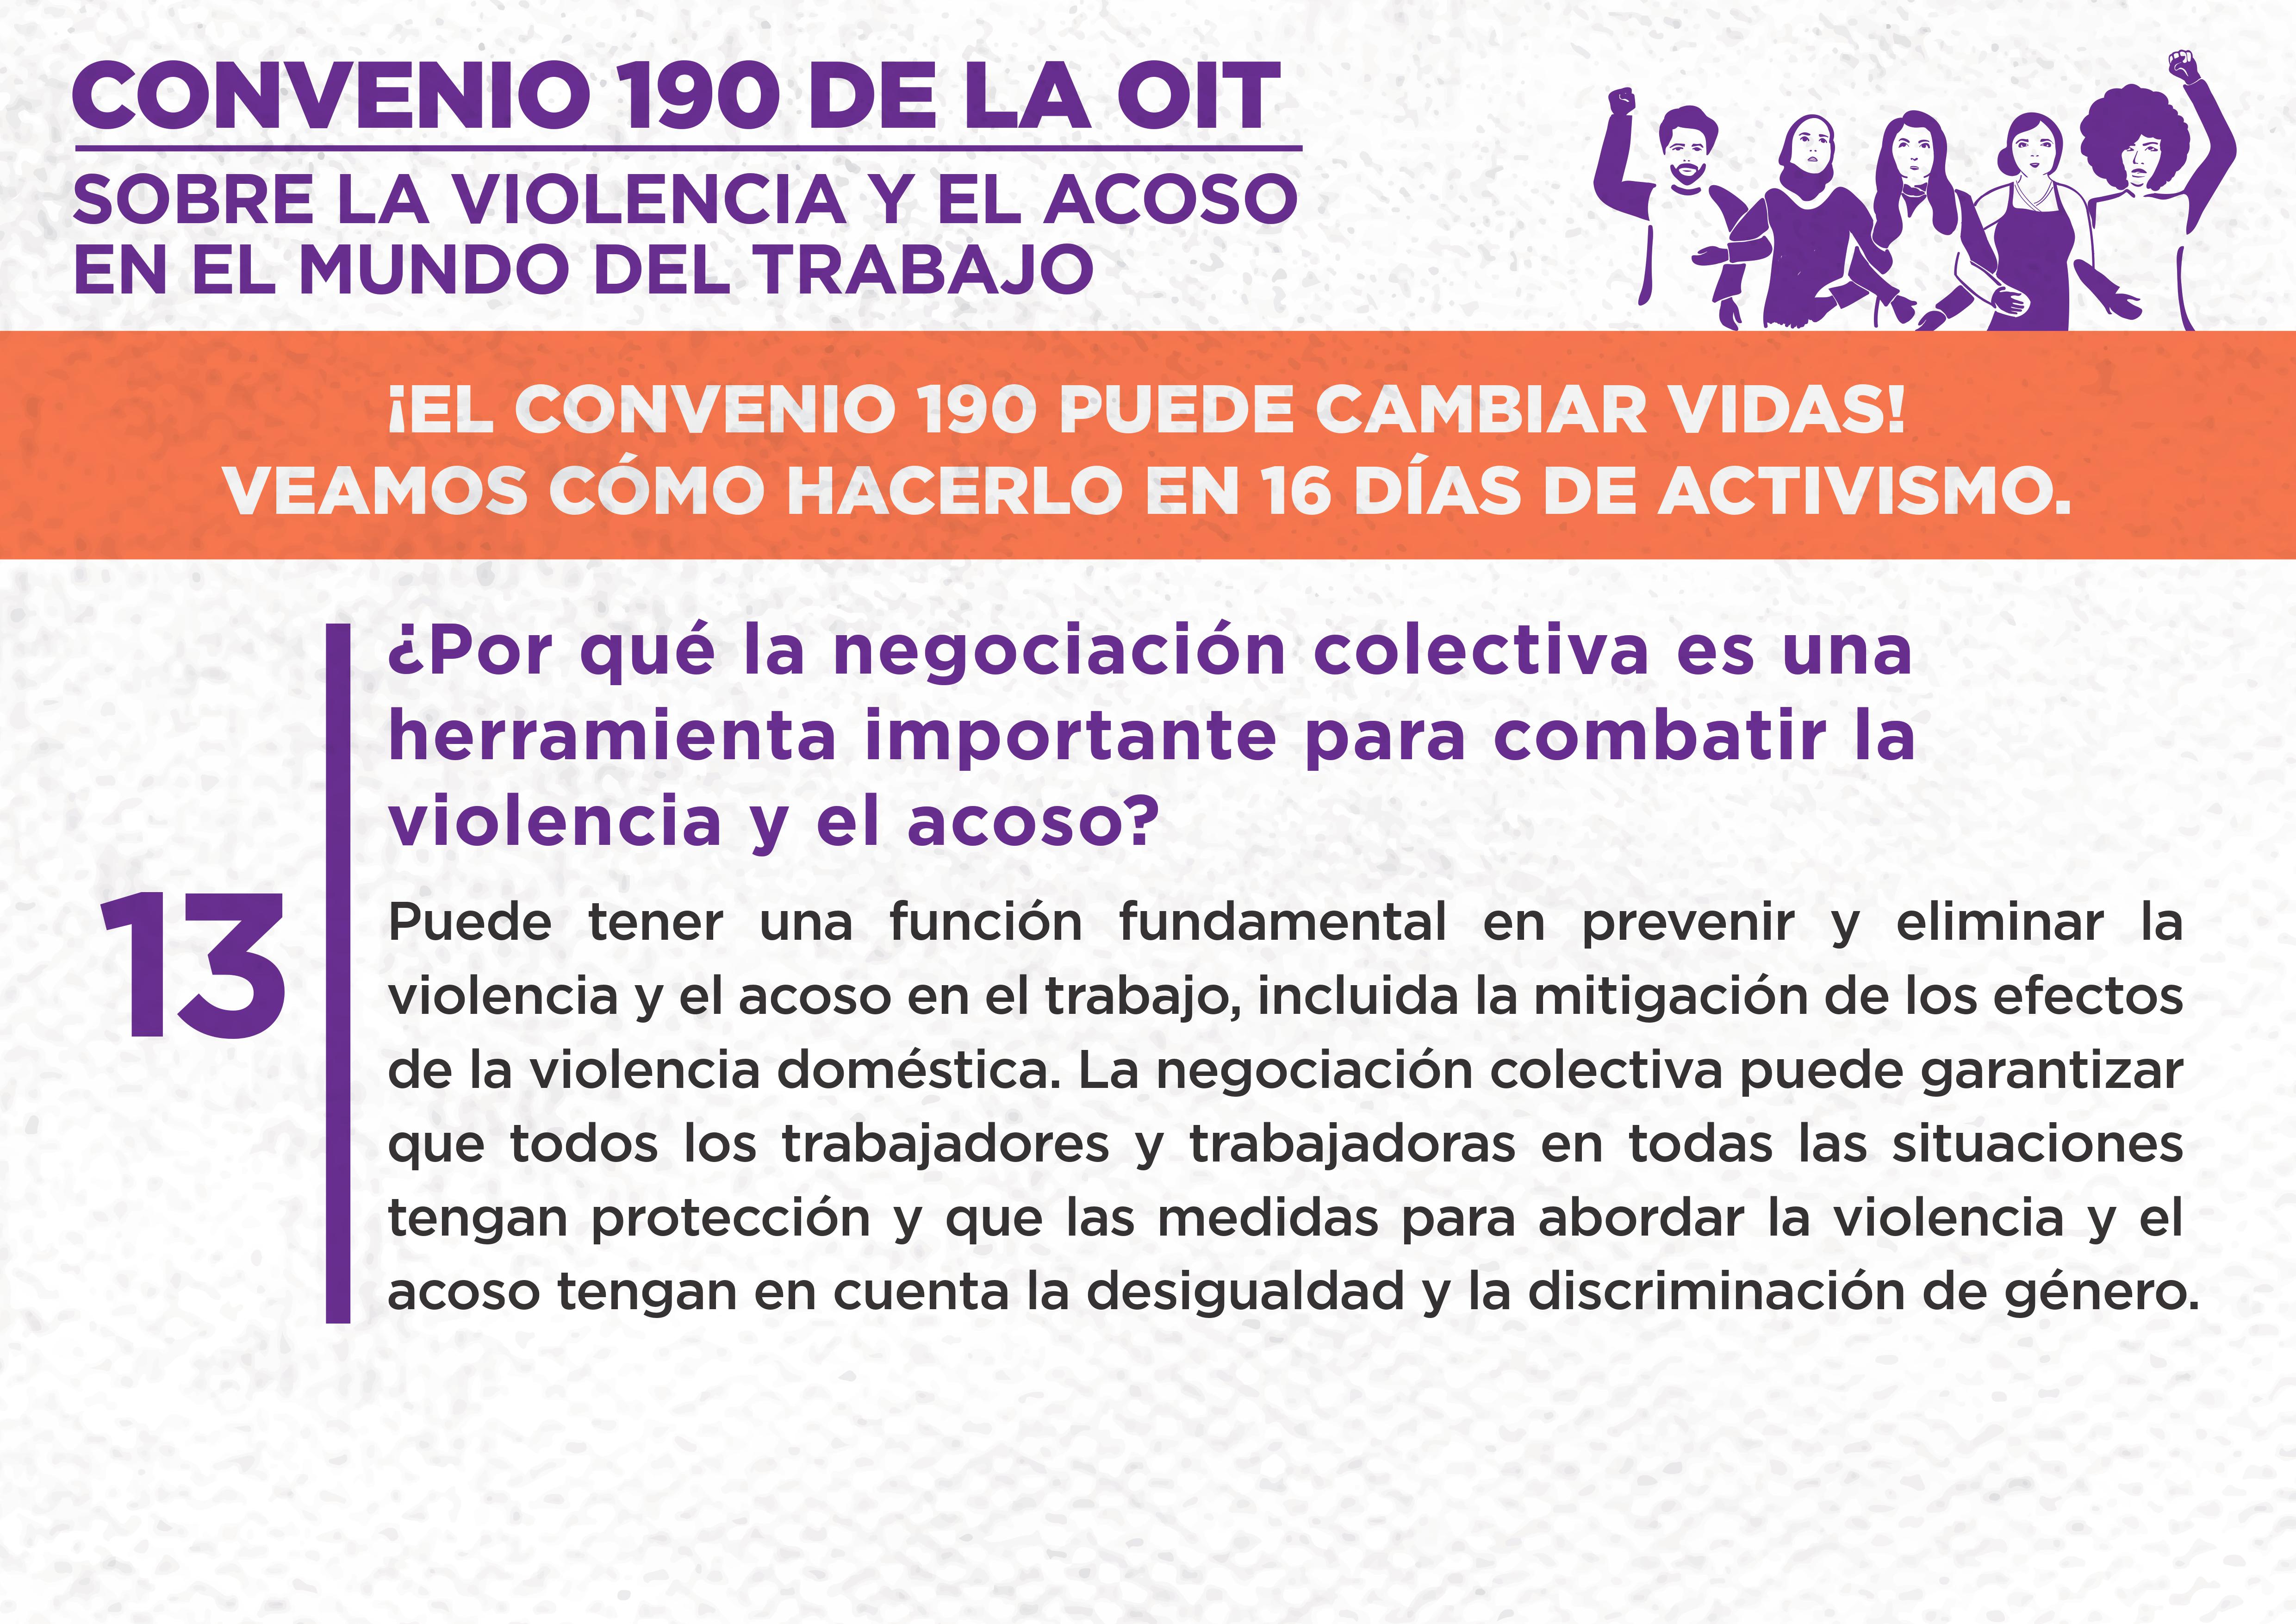 13. ¿Por qué la negociación colectiva es una herramienta importante para combatir la violencia y el acoso?